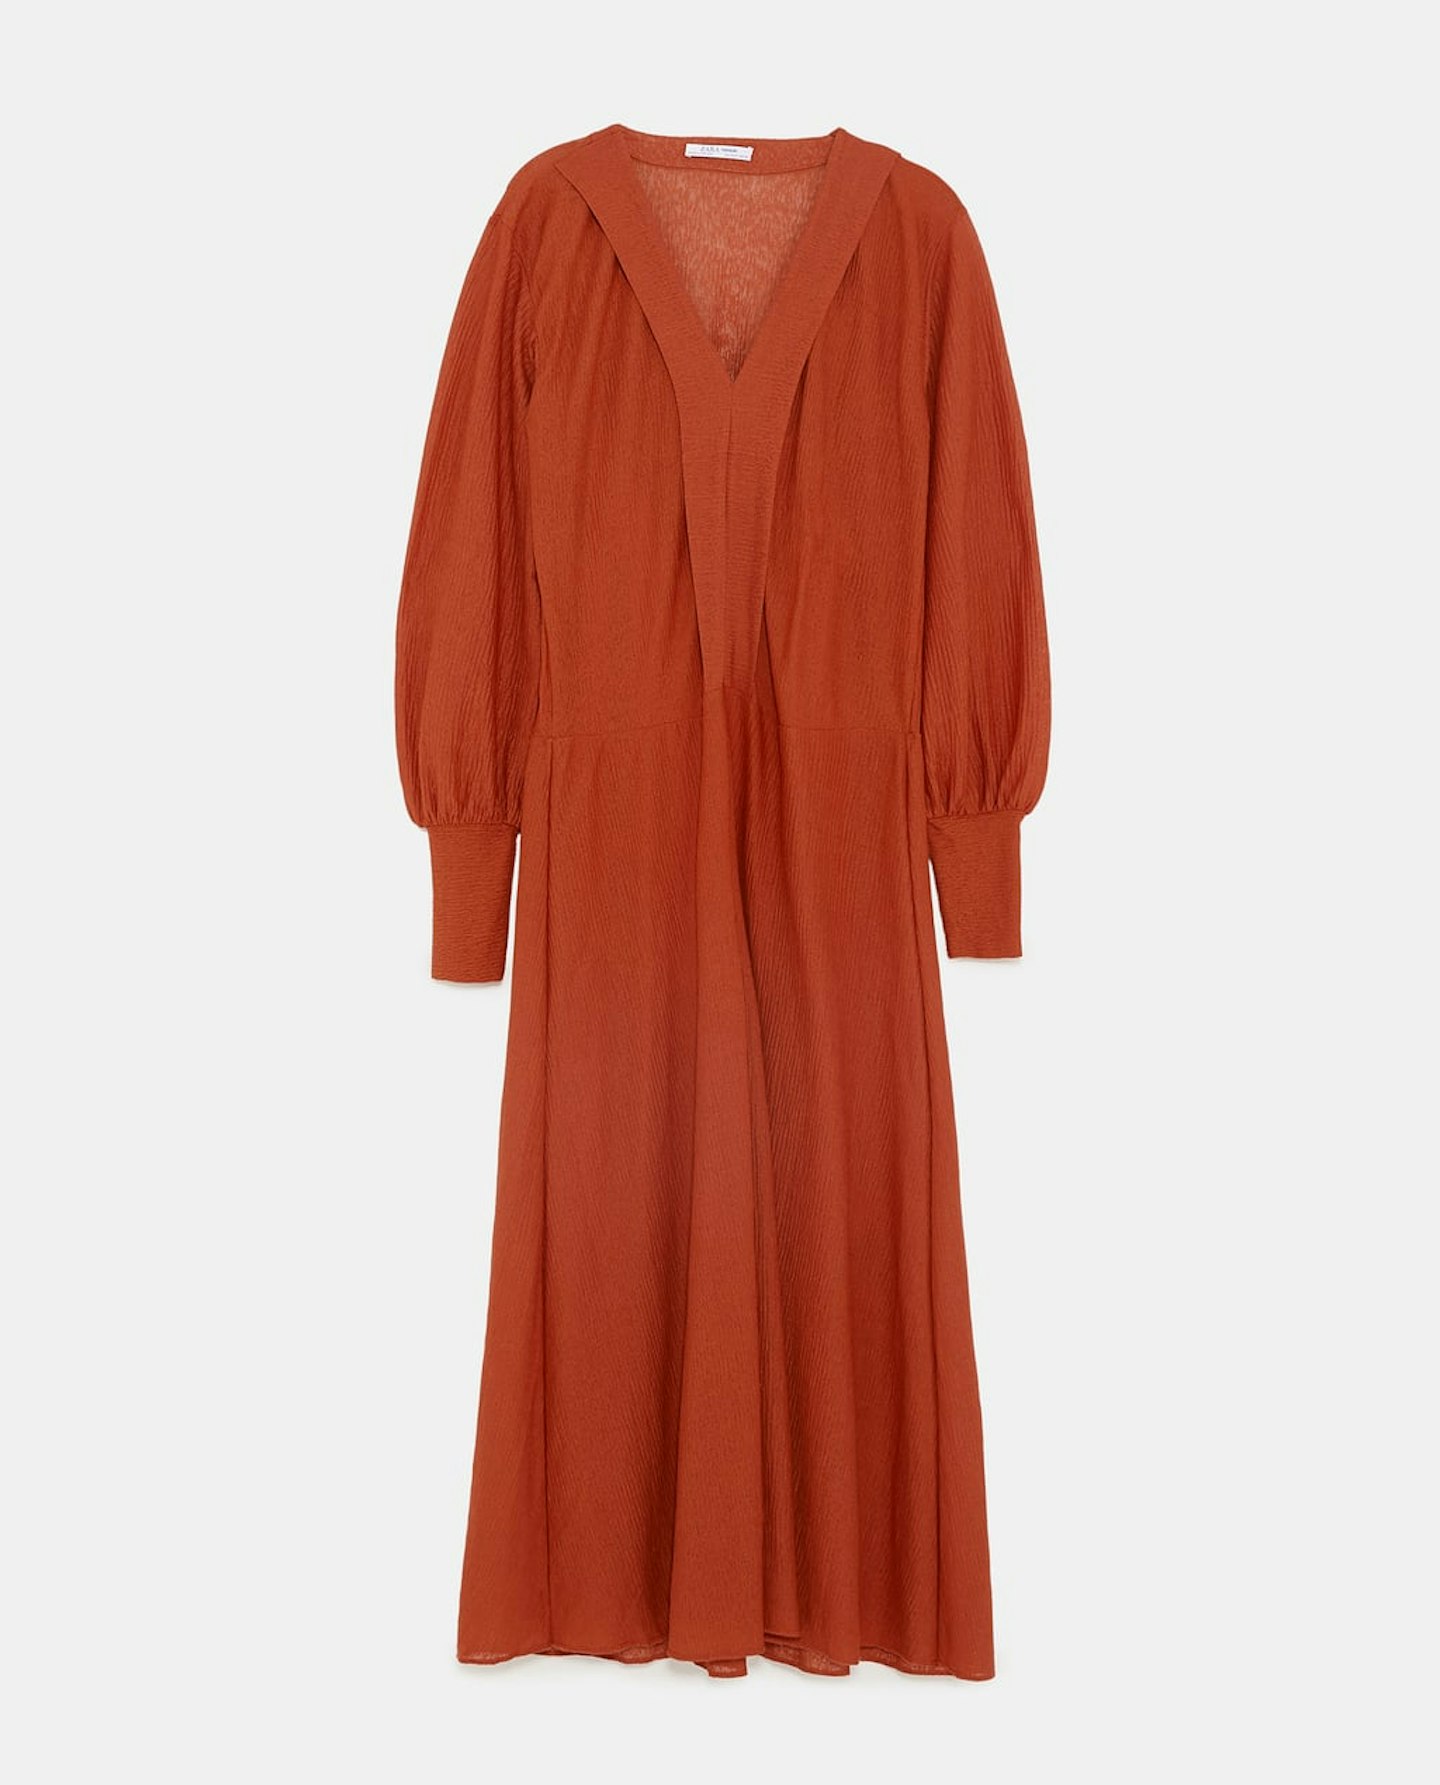 Zara, Sheer Dress, £25.99